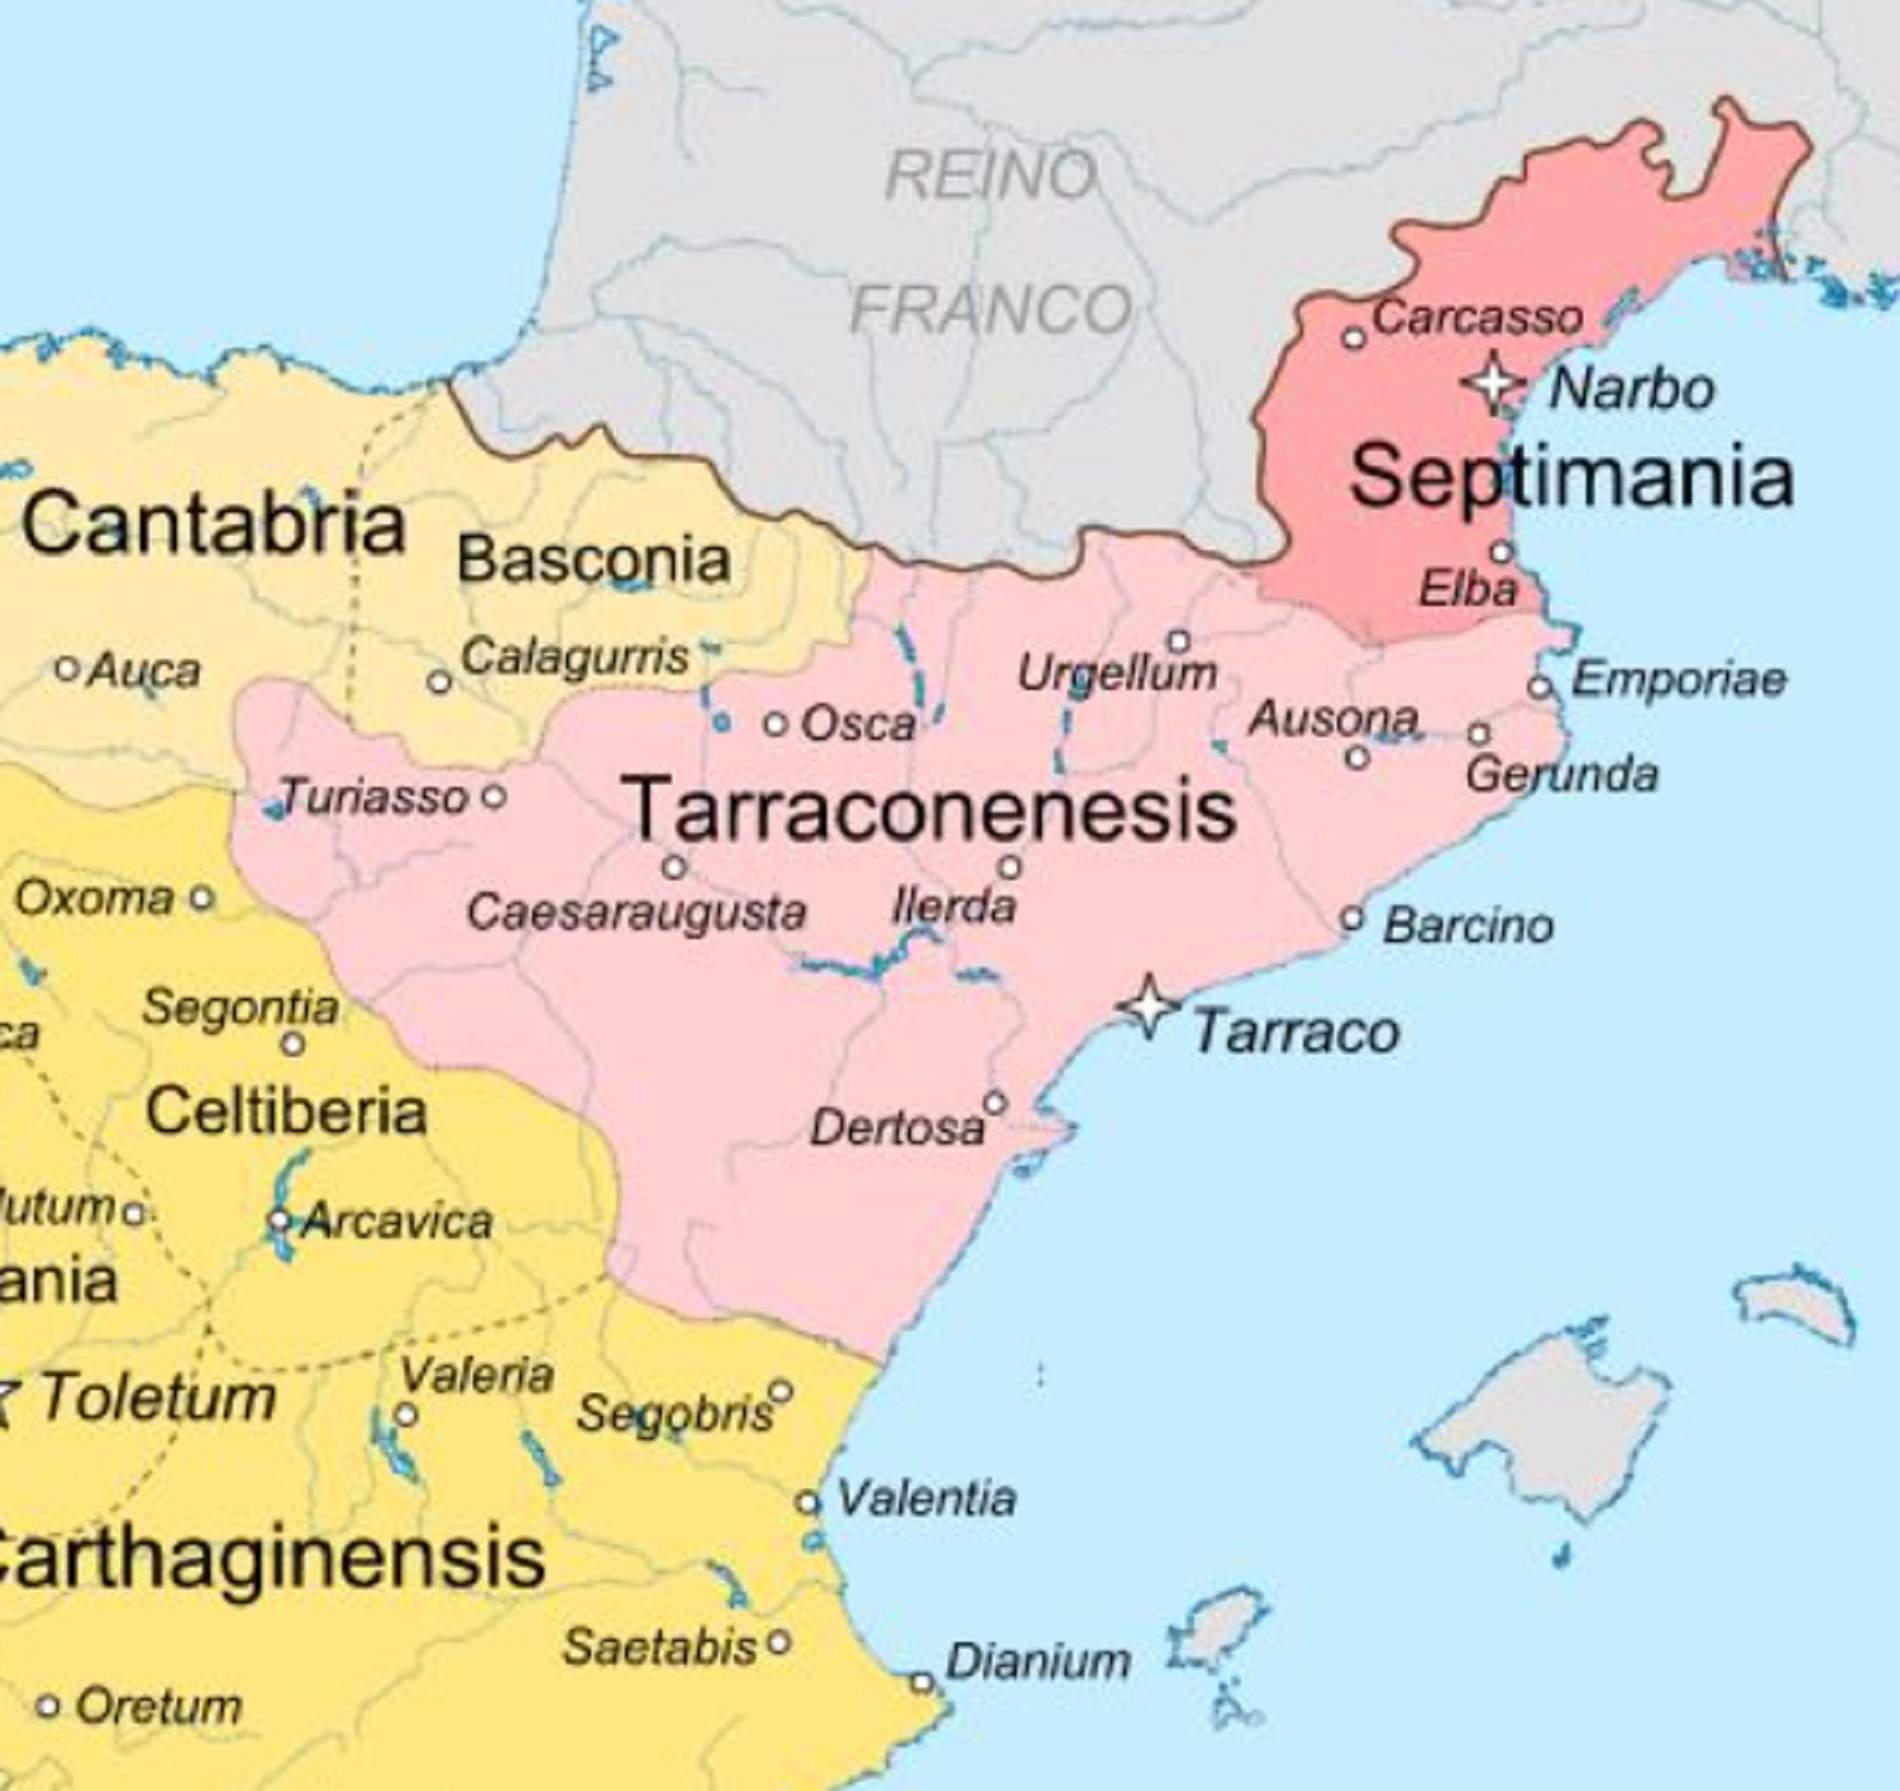 Mapa del quadrant nord oriental de la monarquia visigótica hispànica. Font Universidad Complutense